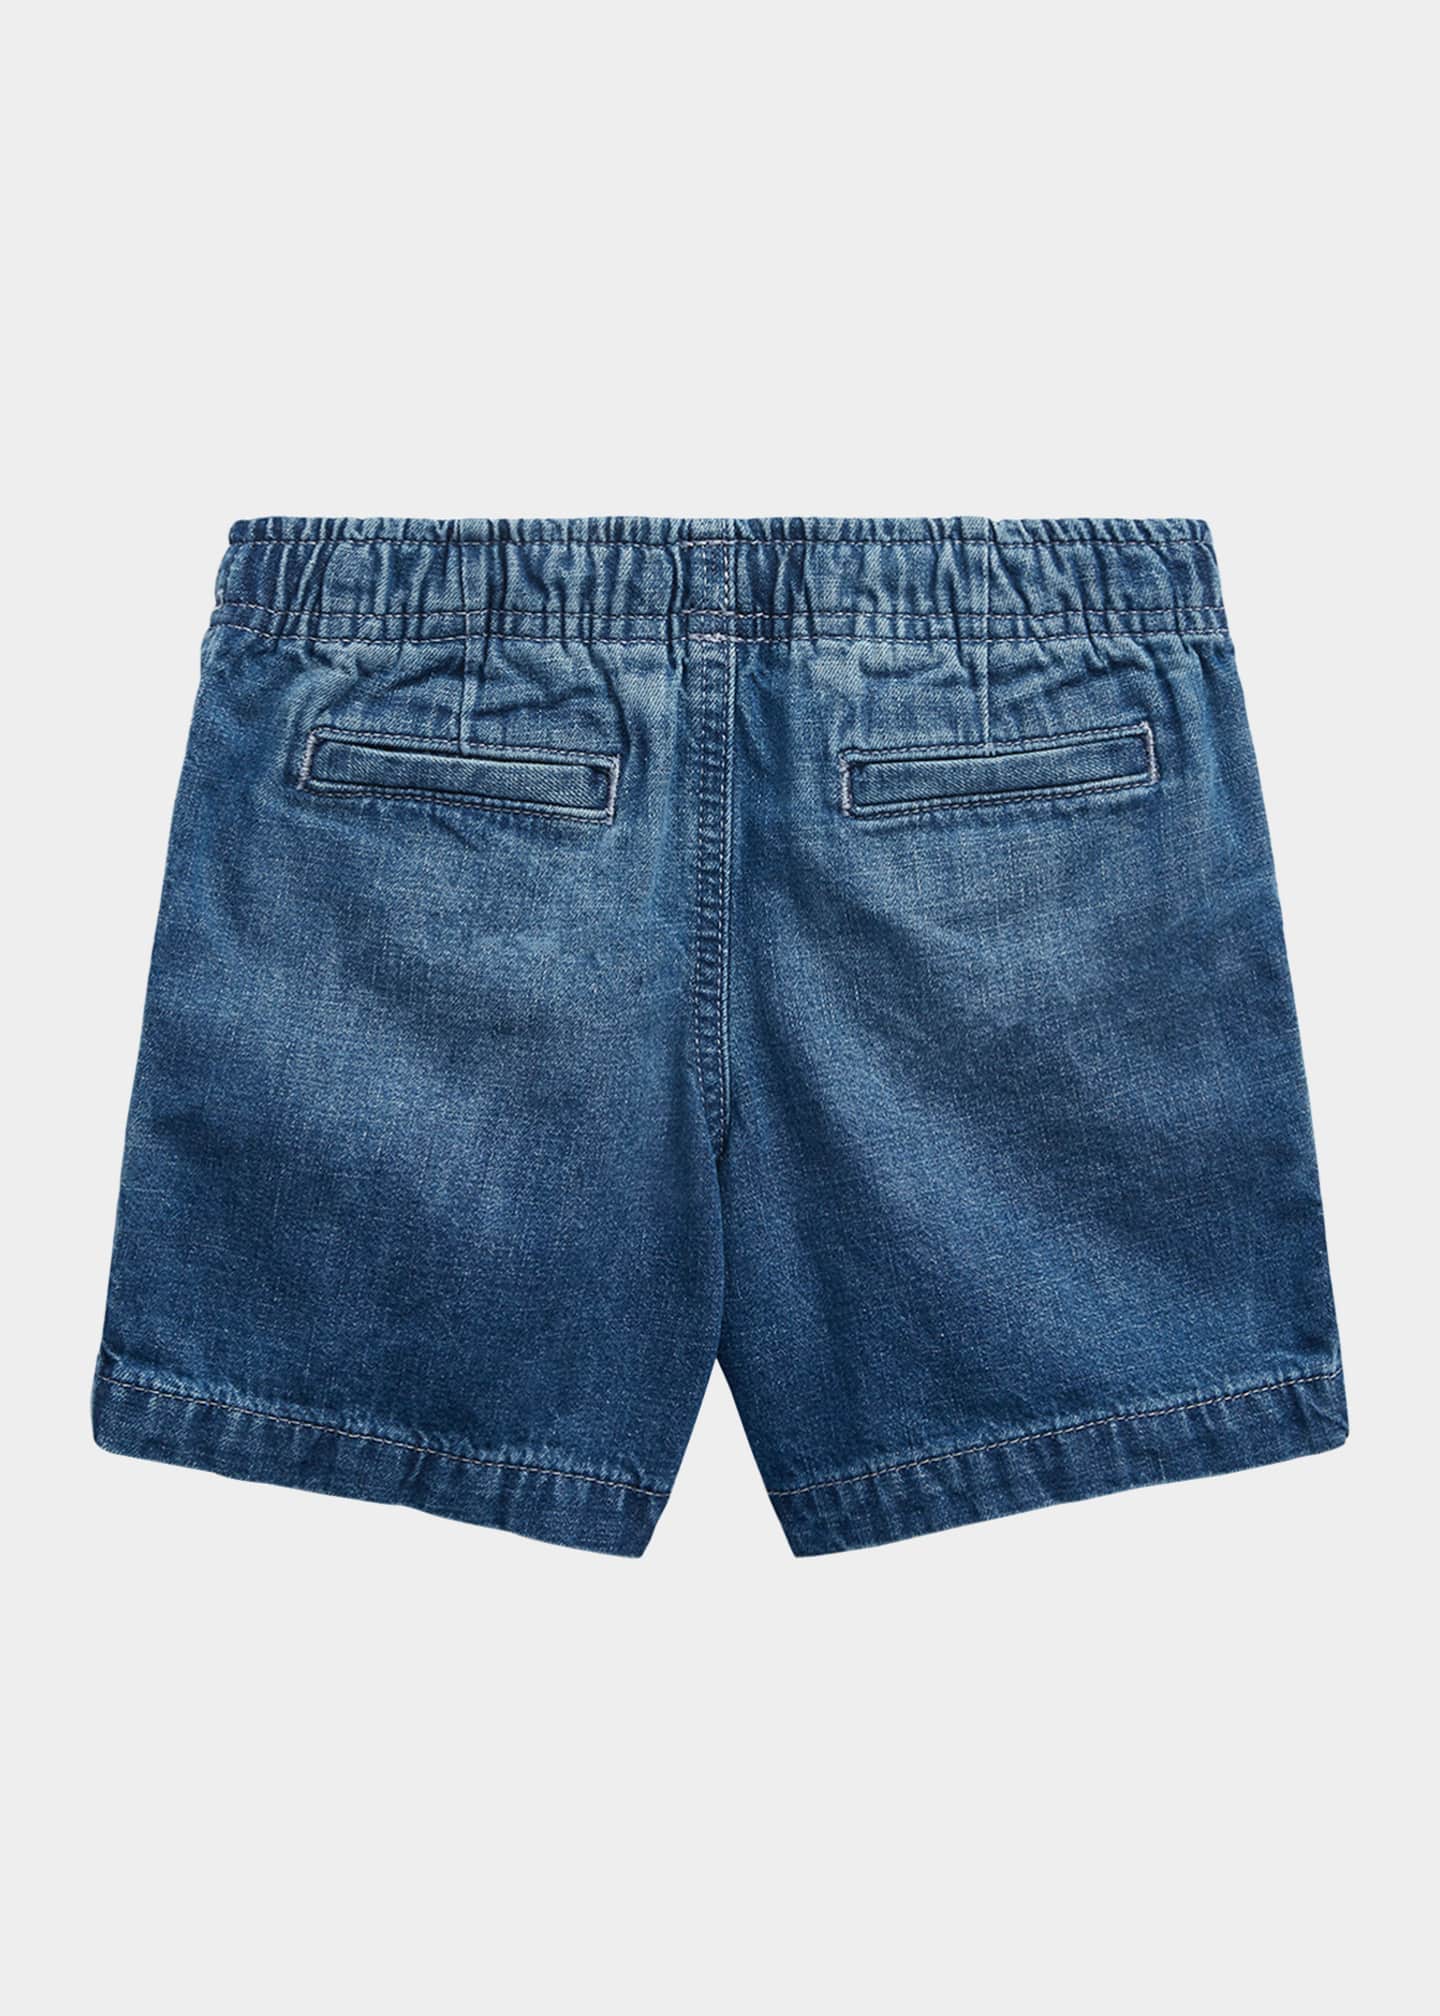 Ralph Lauren Childrenswear Boy's Denim Prepster Shorts, Size 2-4 ...